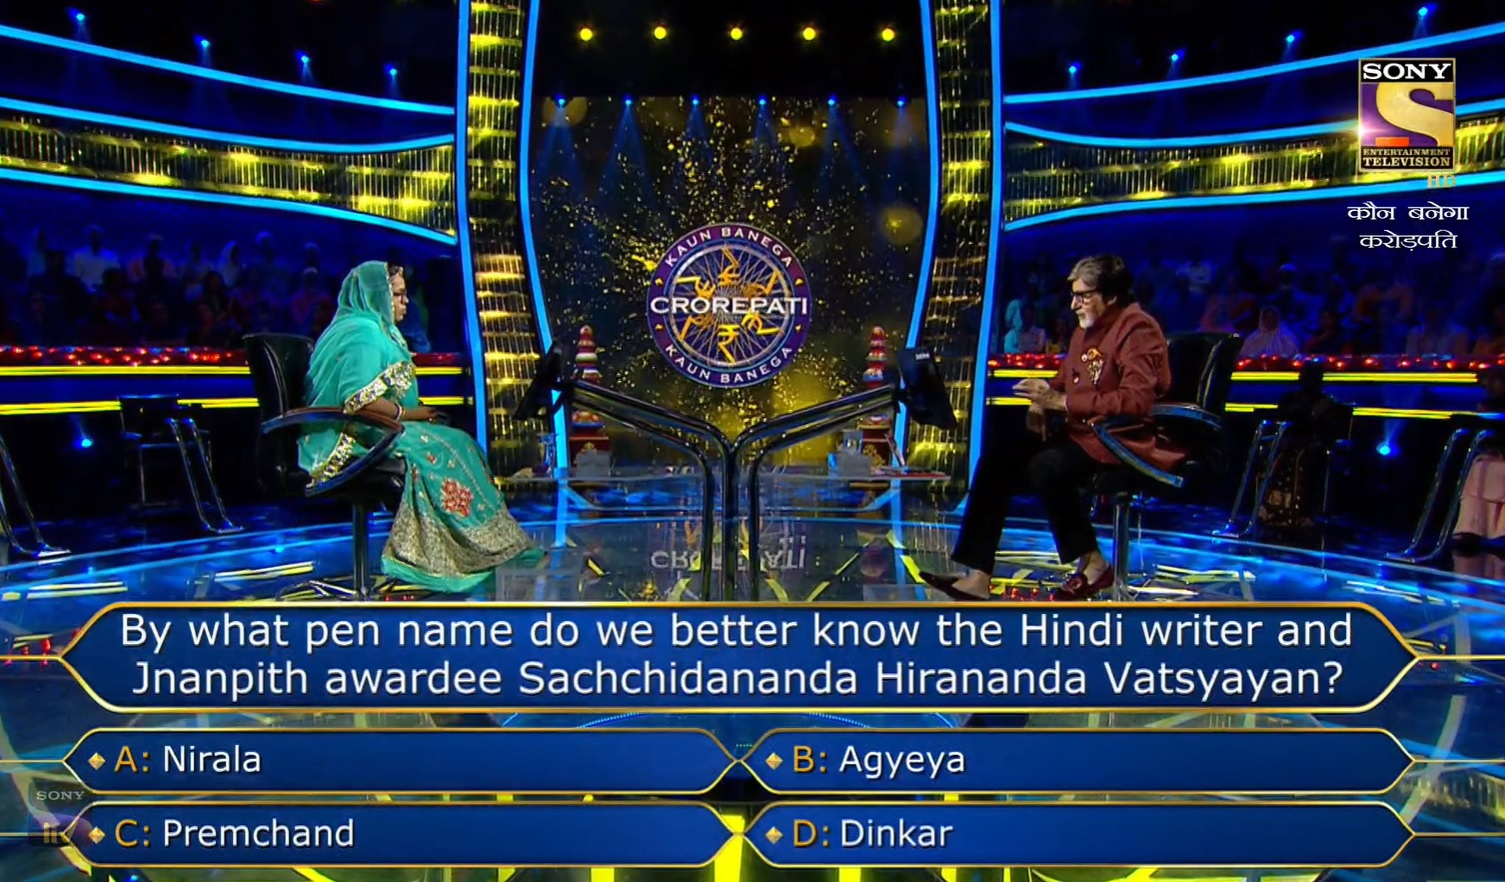 Ques : By what pen name do we better know the Hindi writer and Jnanpith awardee Sachchindanda Hirananda Vatsyayan?